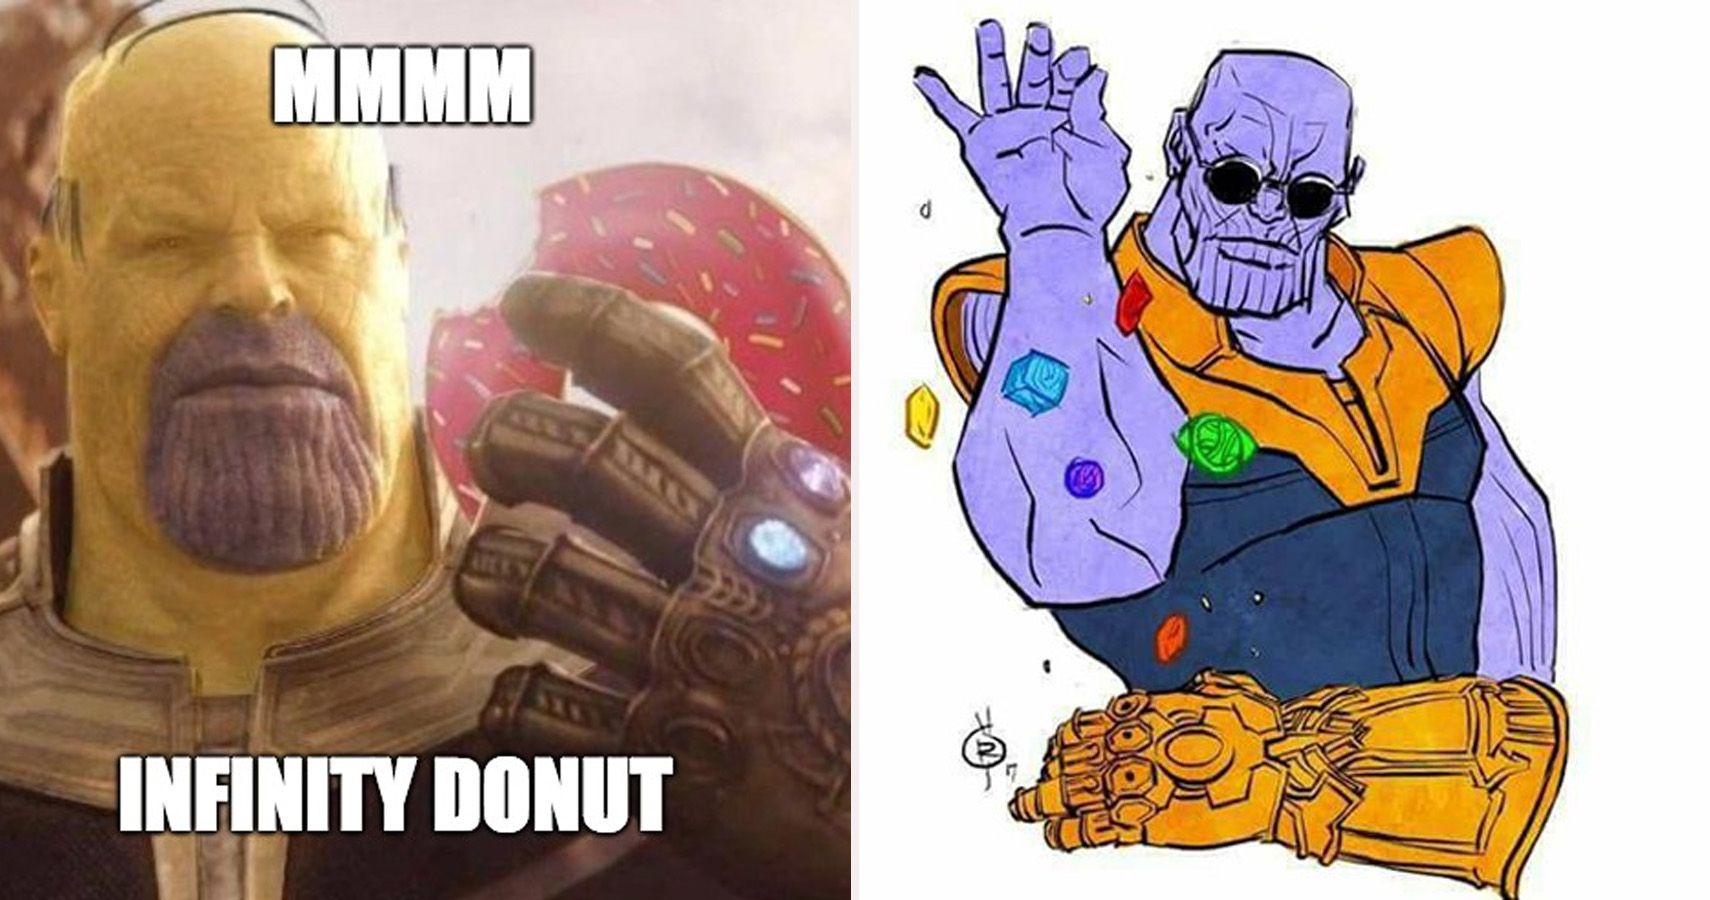 Michael Jackson as Thanos : r/memes